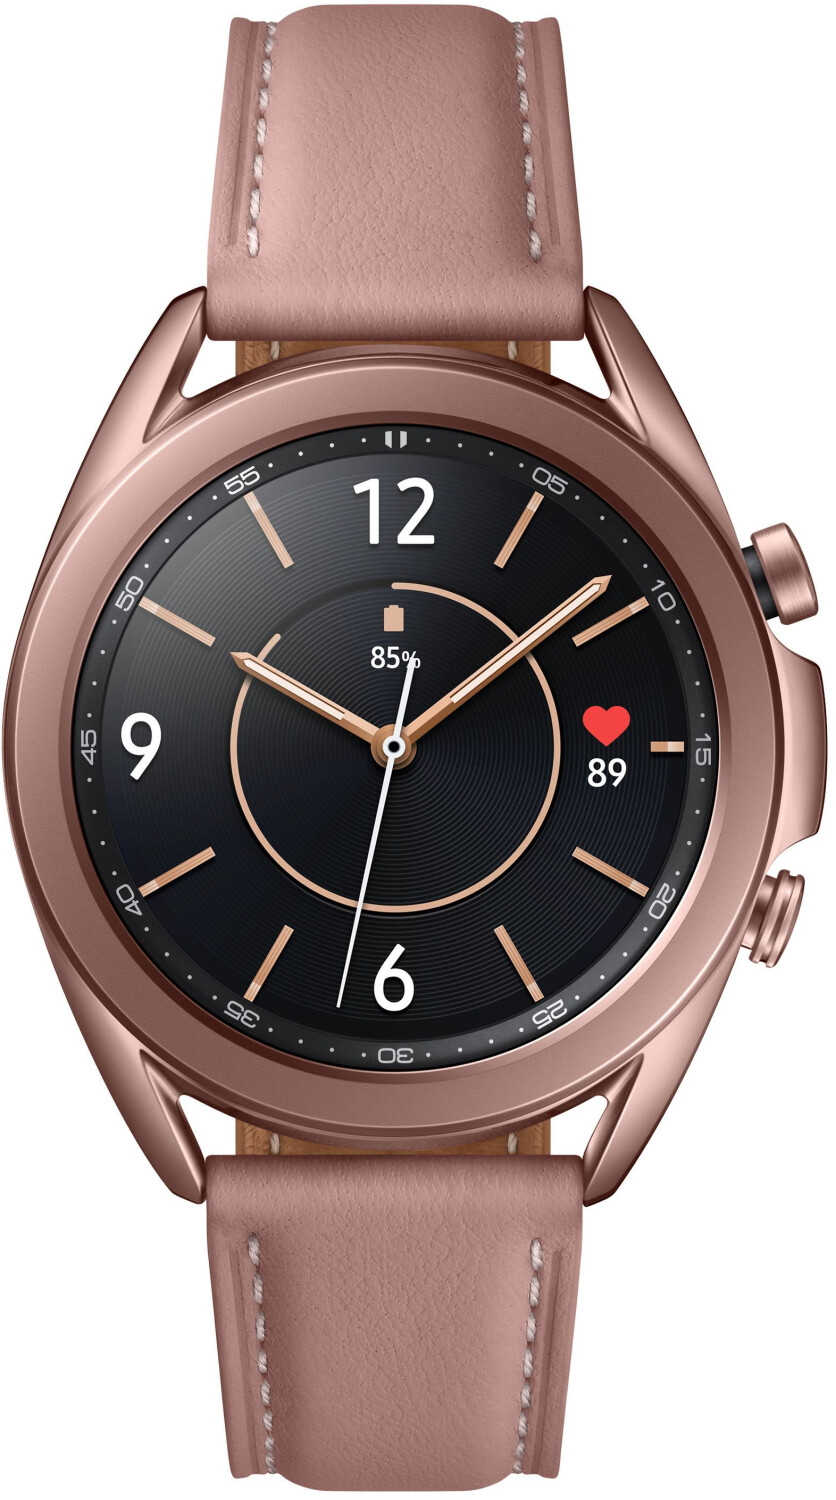 Photos - Smartwatches Samsung Galaxy Watch3 41mm Mystic Bronze 